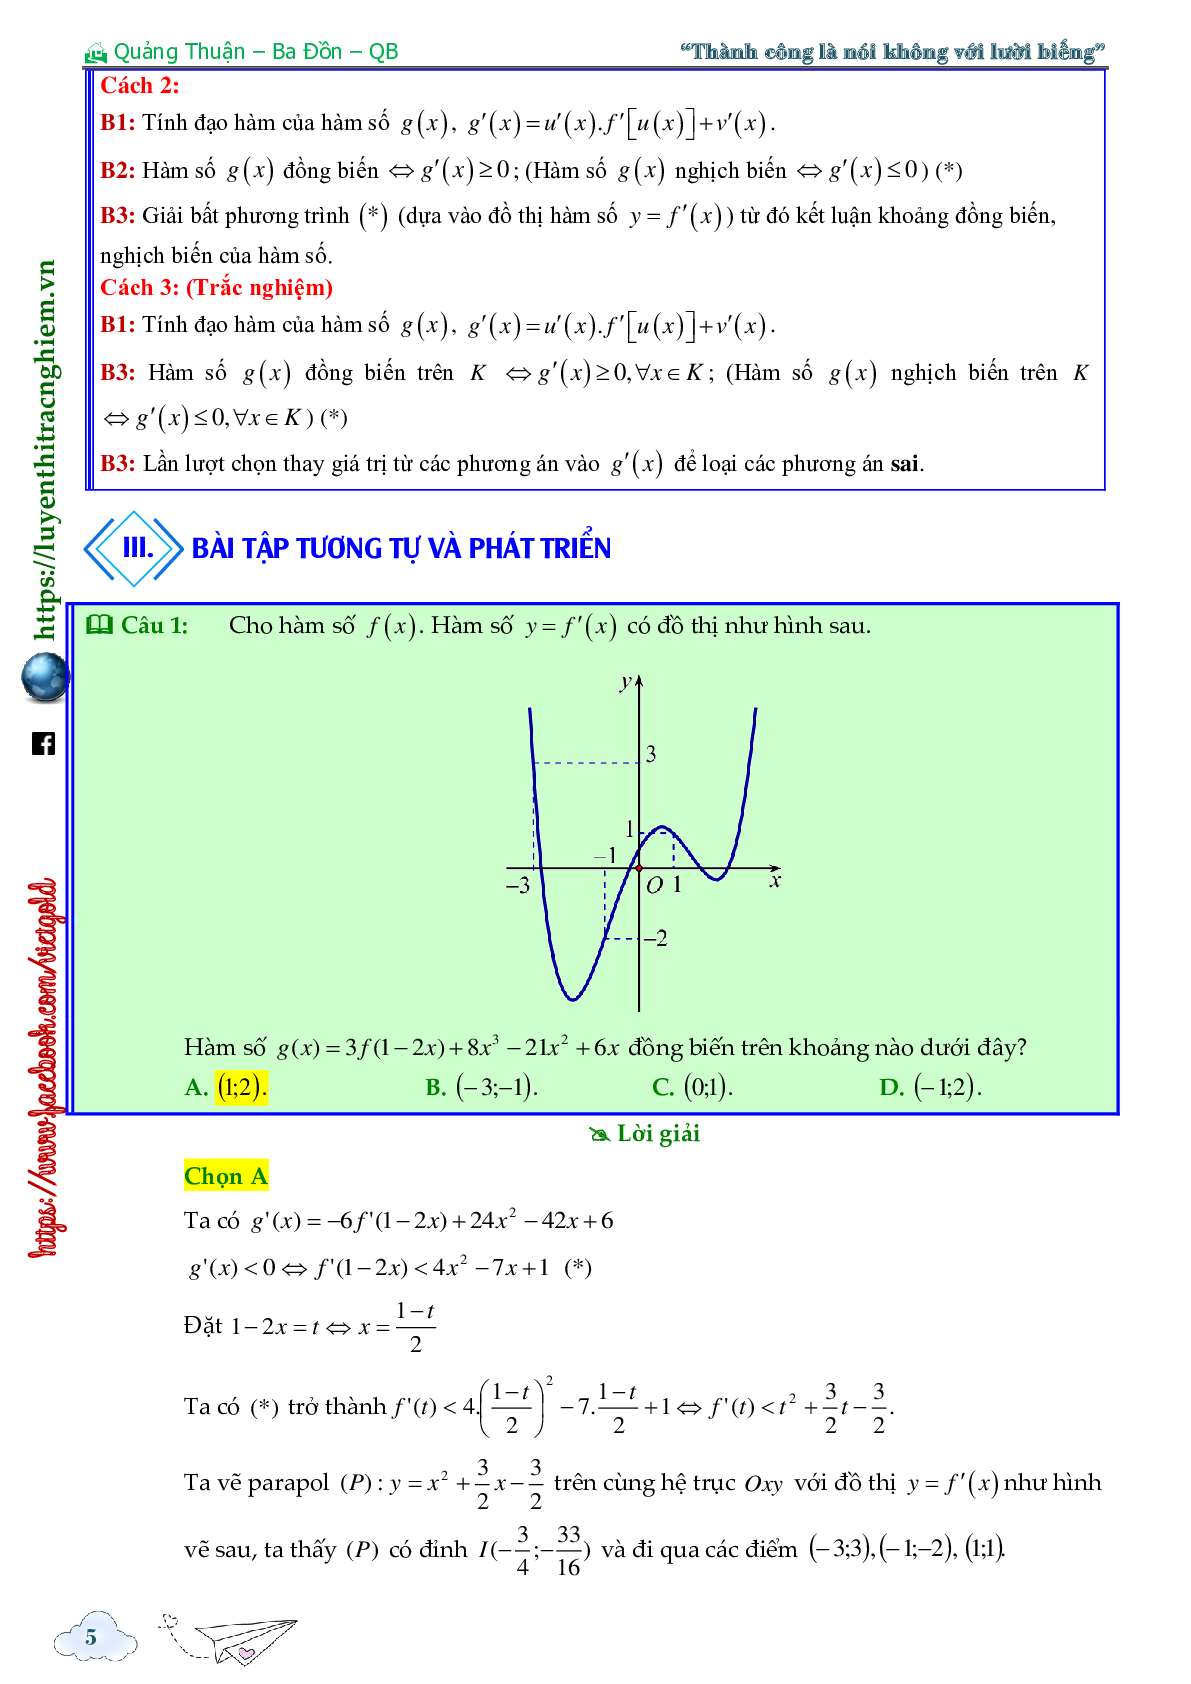 Tính đơn điệu của hàm ẩn cho bởi đồ thị hàm f'(x) (trang 5)